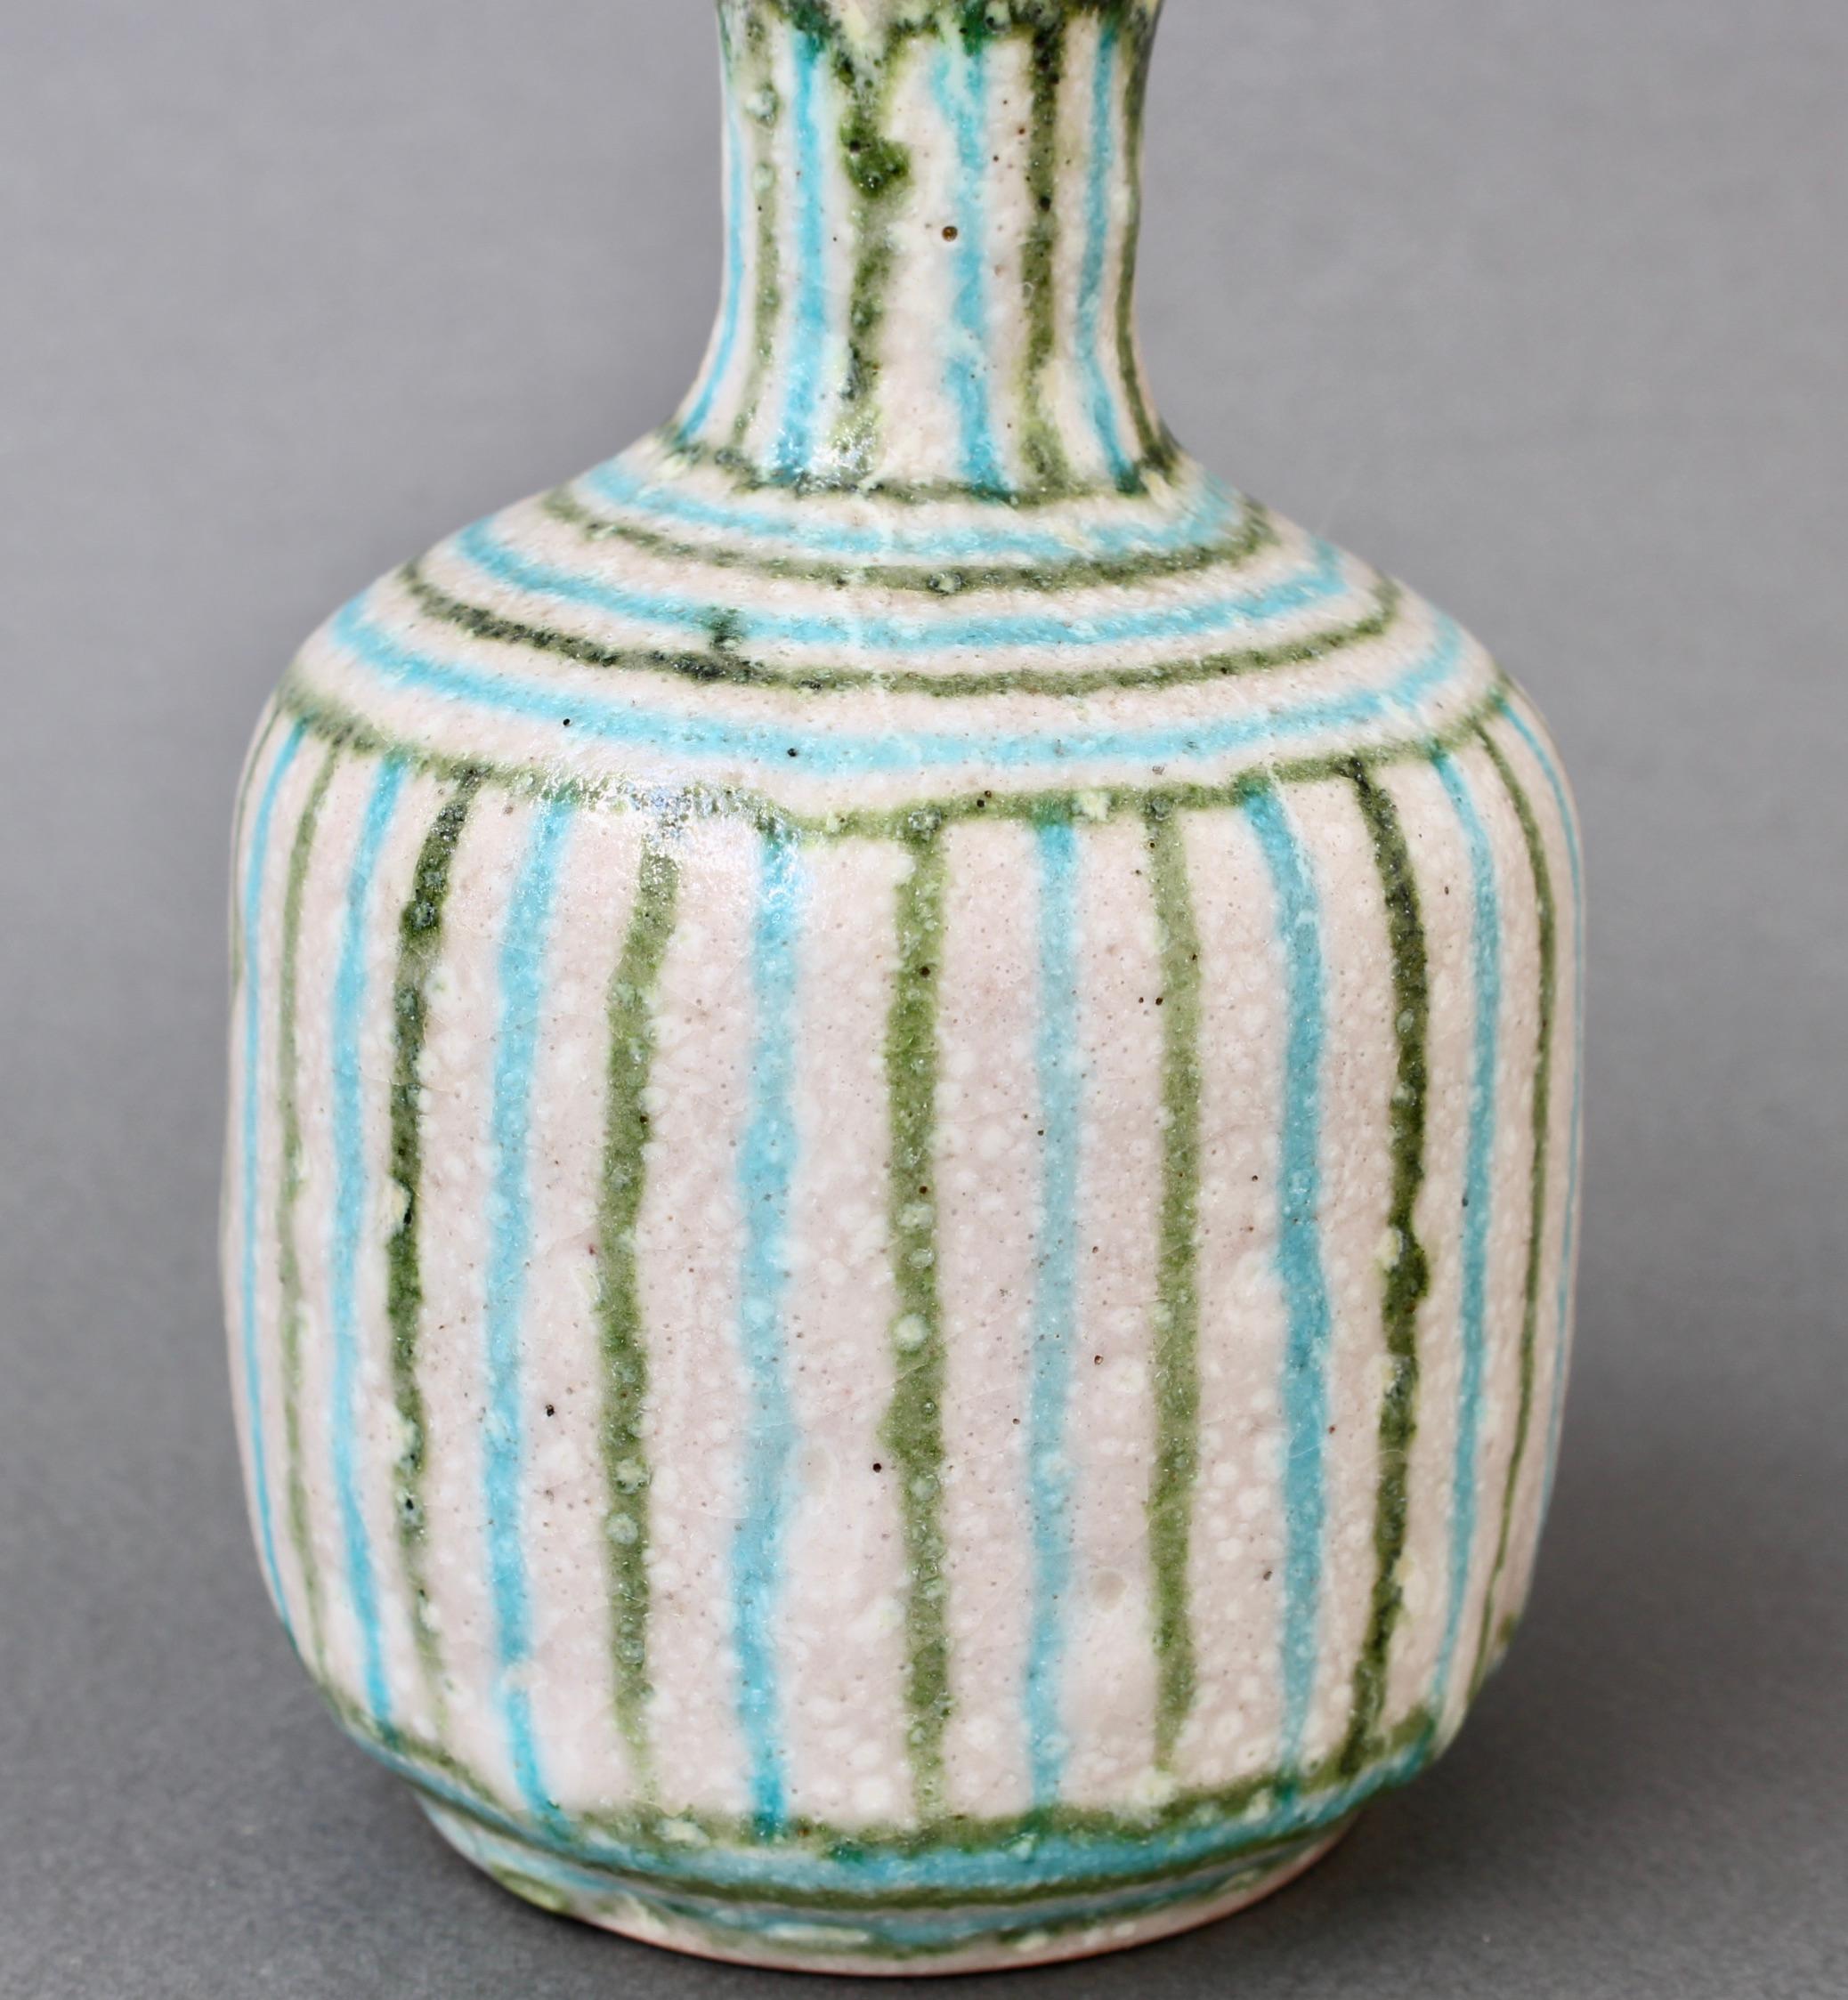 Midcentury Italian Ceramic Vase by Guido Gambone, 'circa 1950s' 1